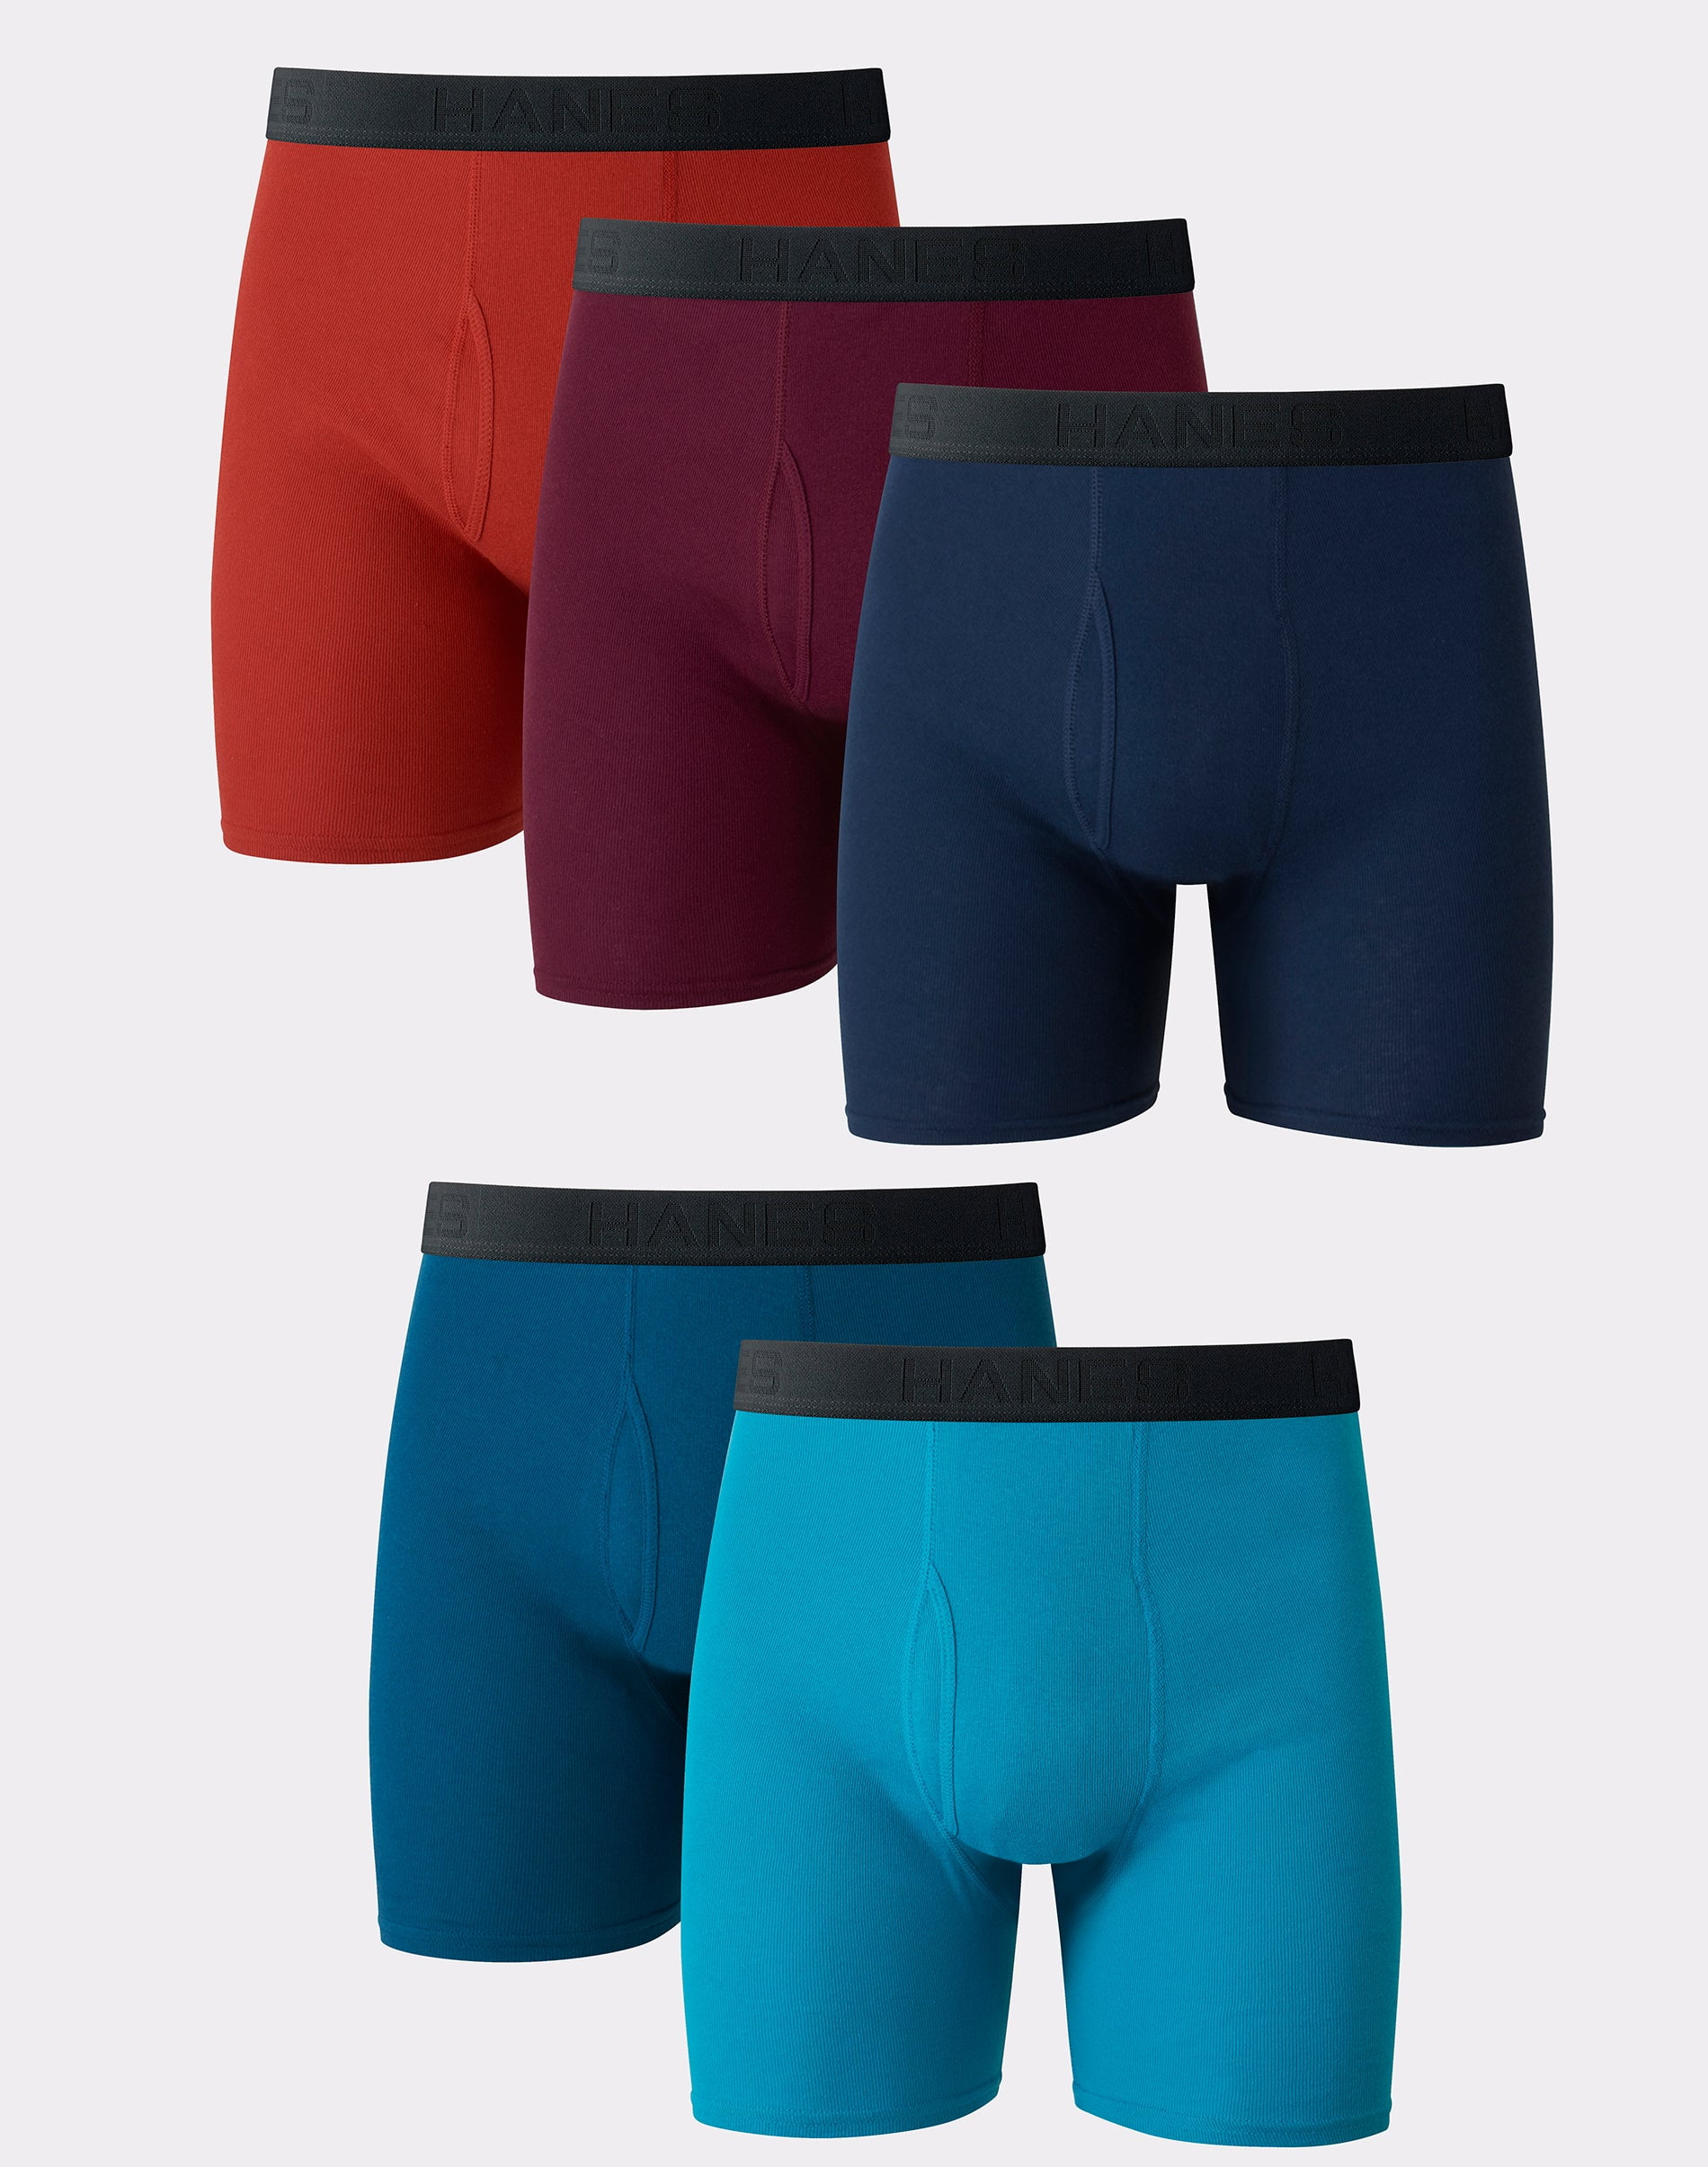 Hanes Ultimate Men’s Cotton Boxer Brief Underwear Comfort Flex Waistband Assorted 5 Pack Xl